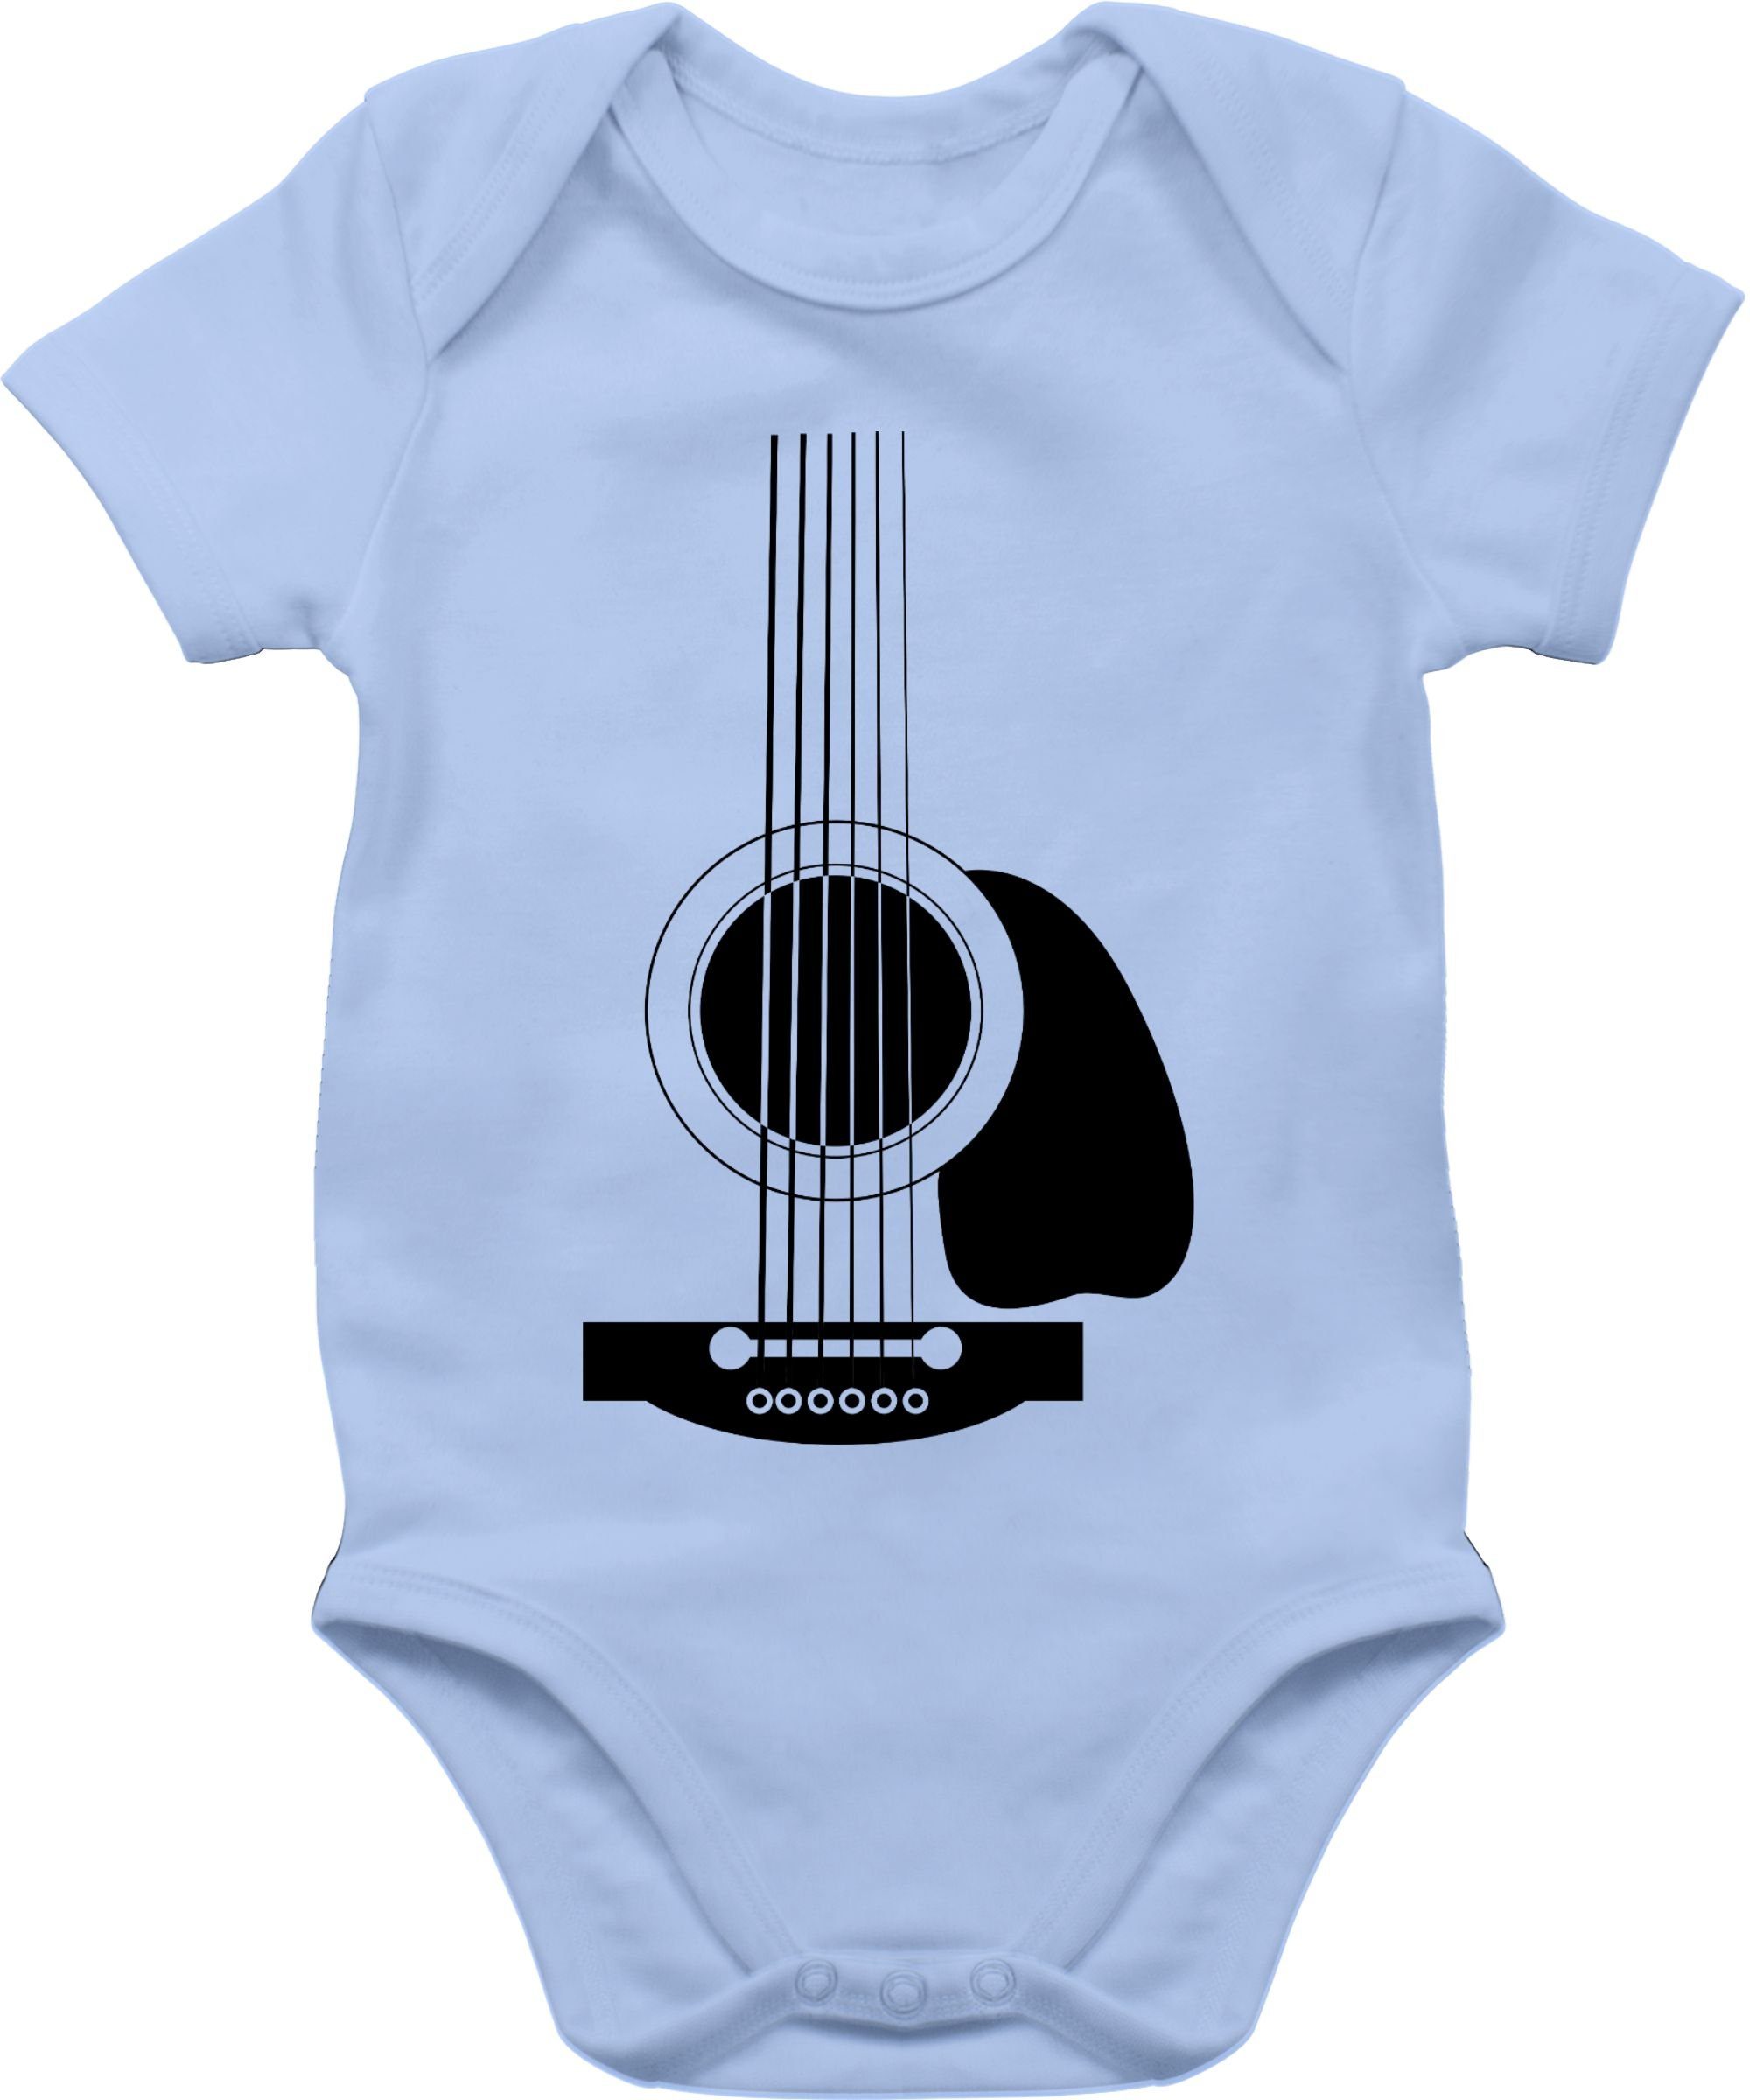 Shirtracer Shirtbody Baby & Gitarren Mädchen 2 Strampler Junge Body Babyblau